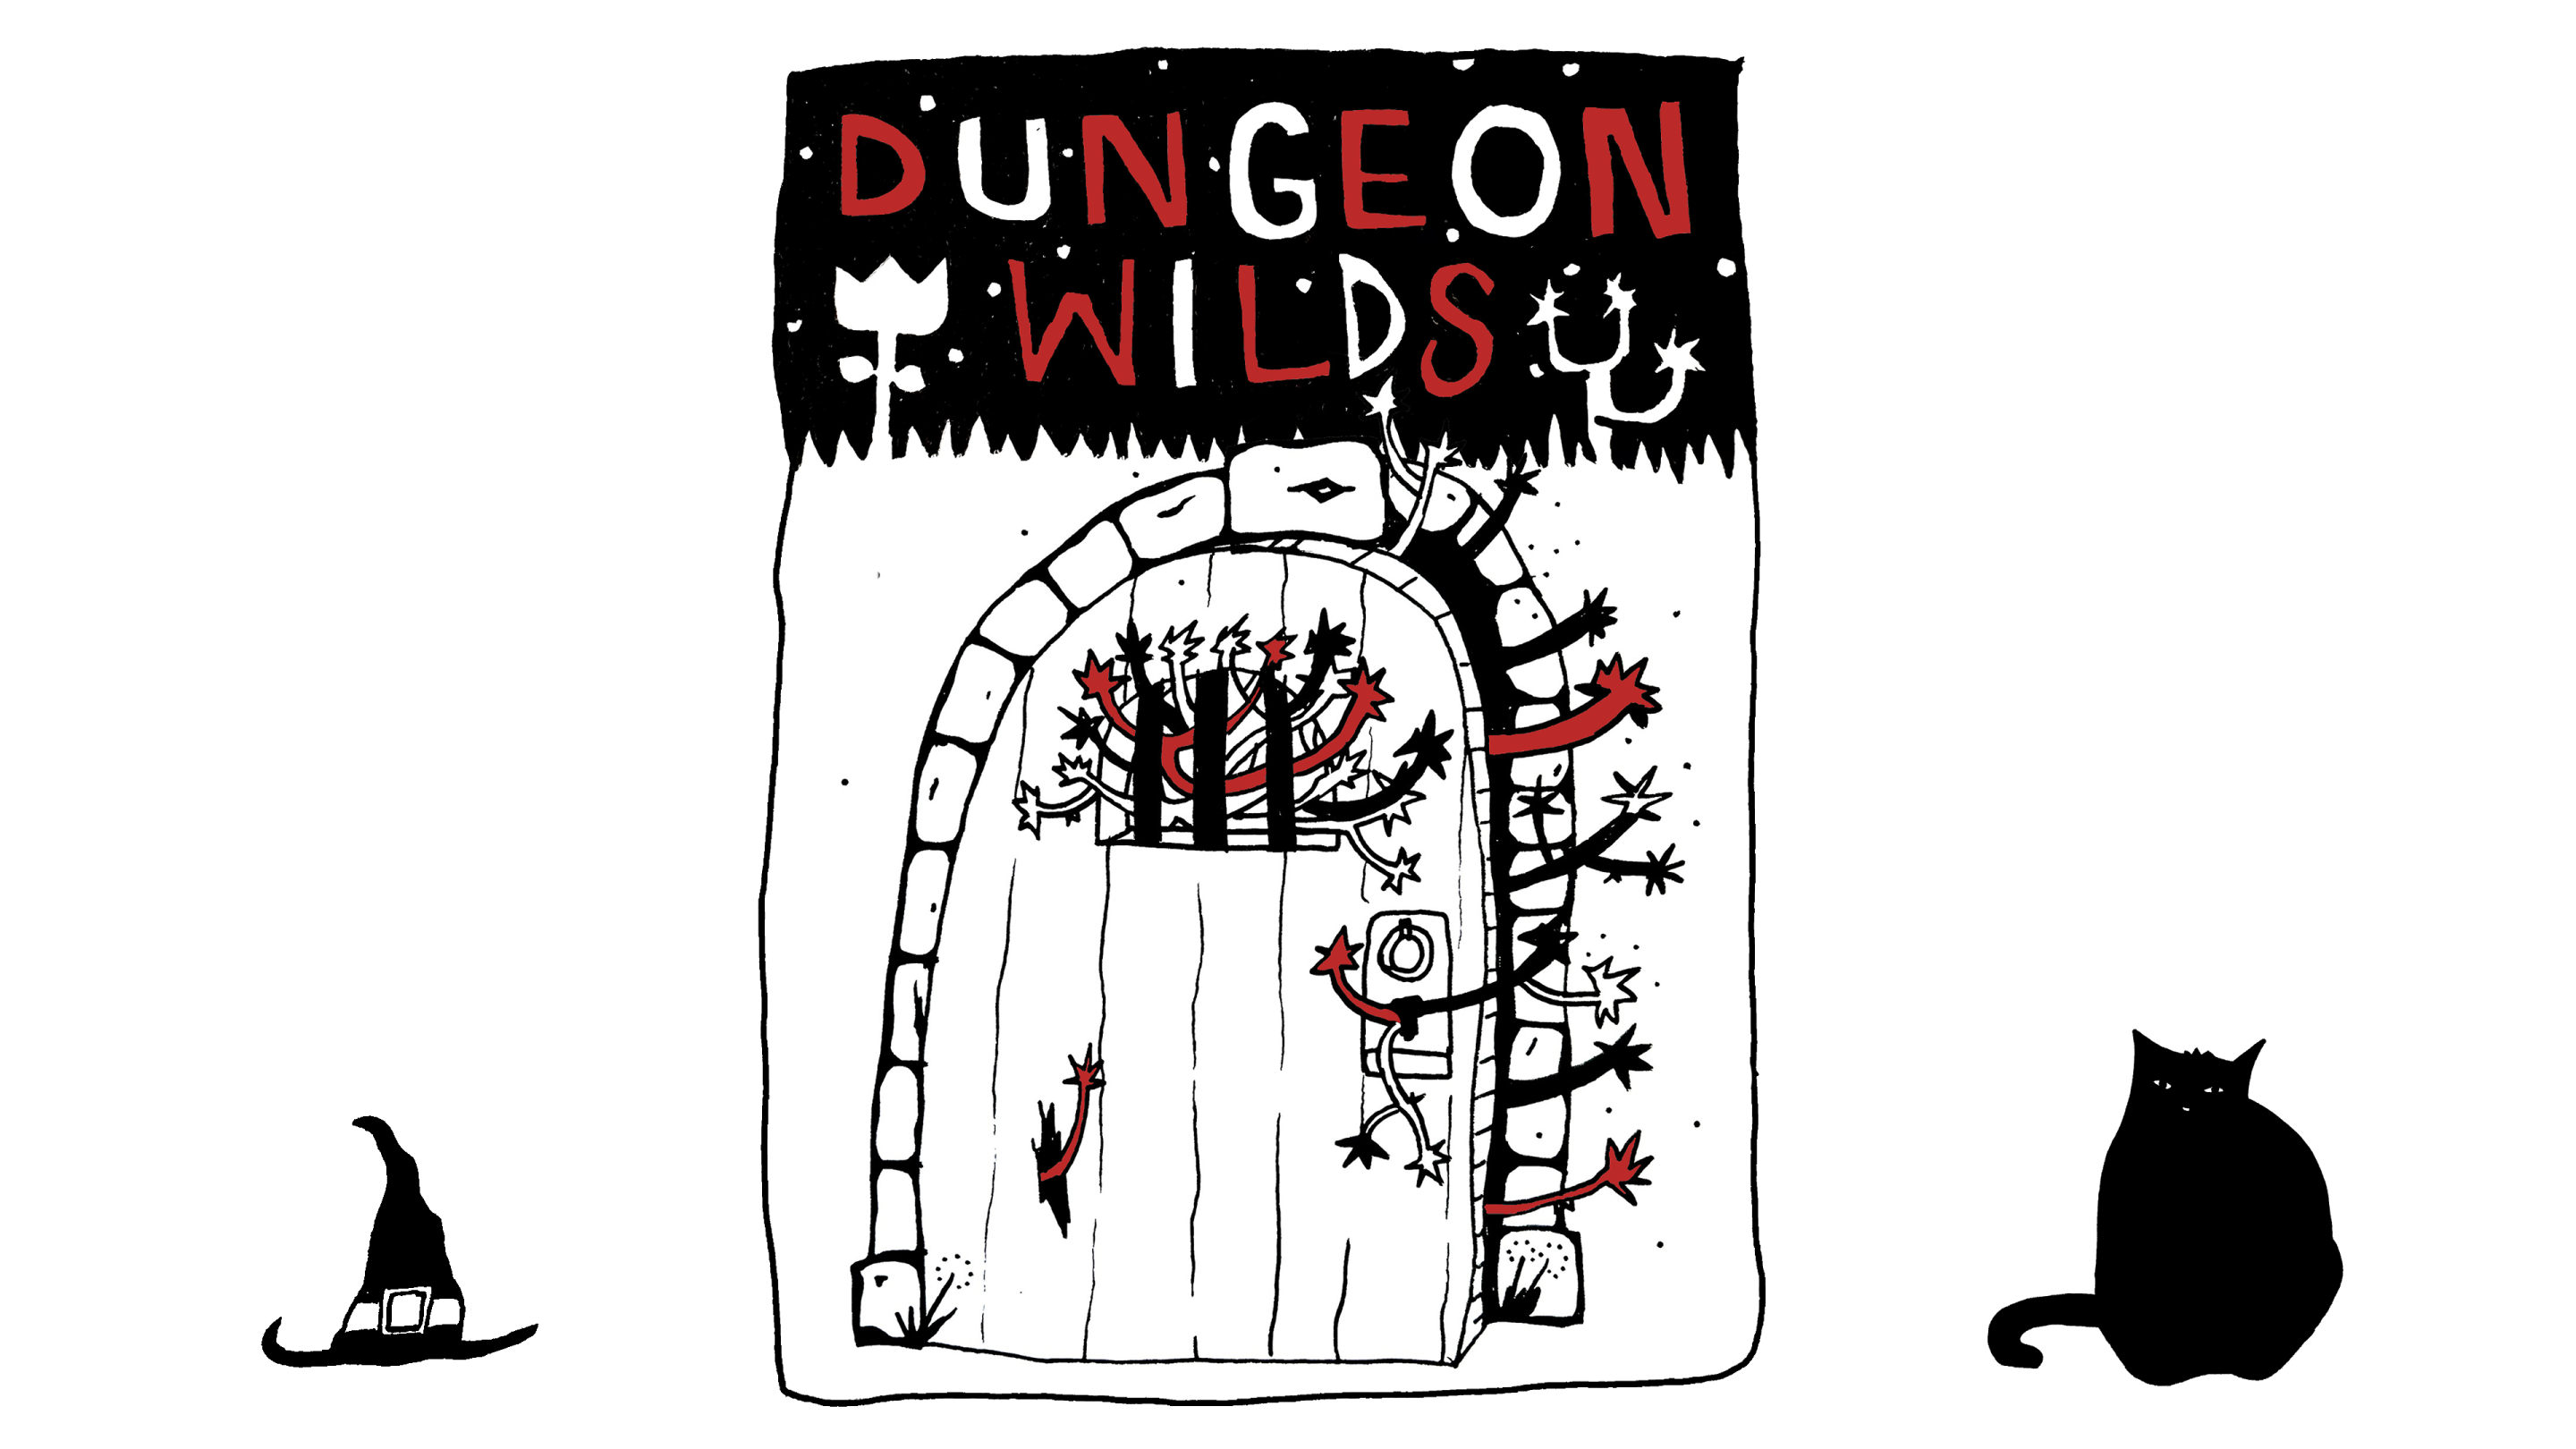 Dungeon Wilds